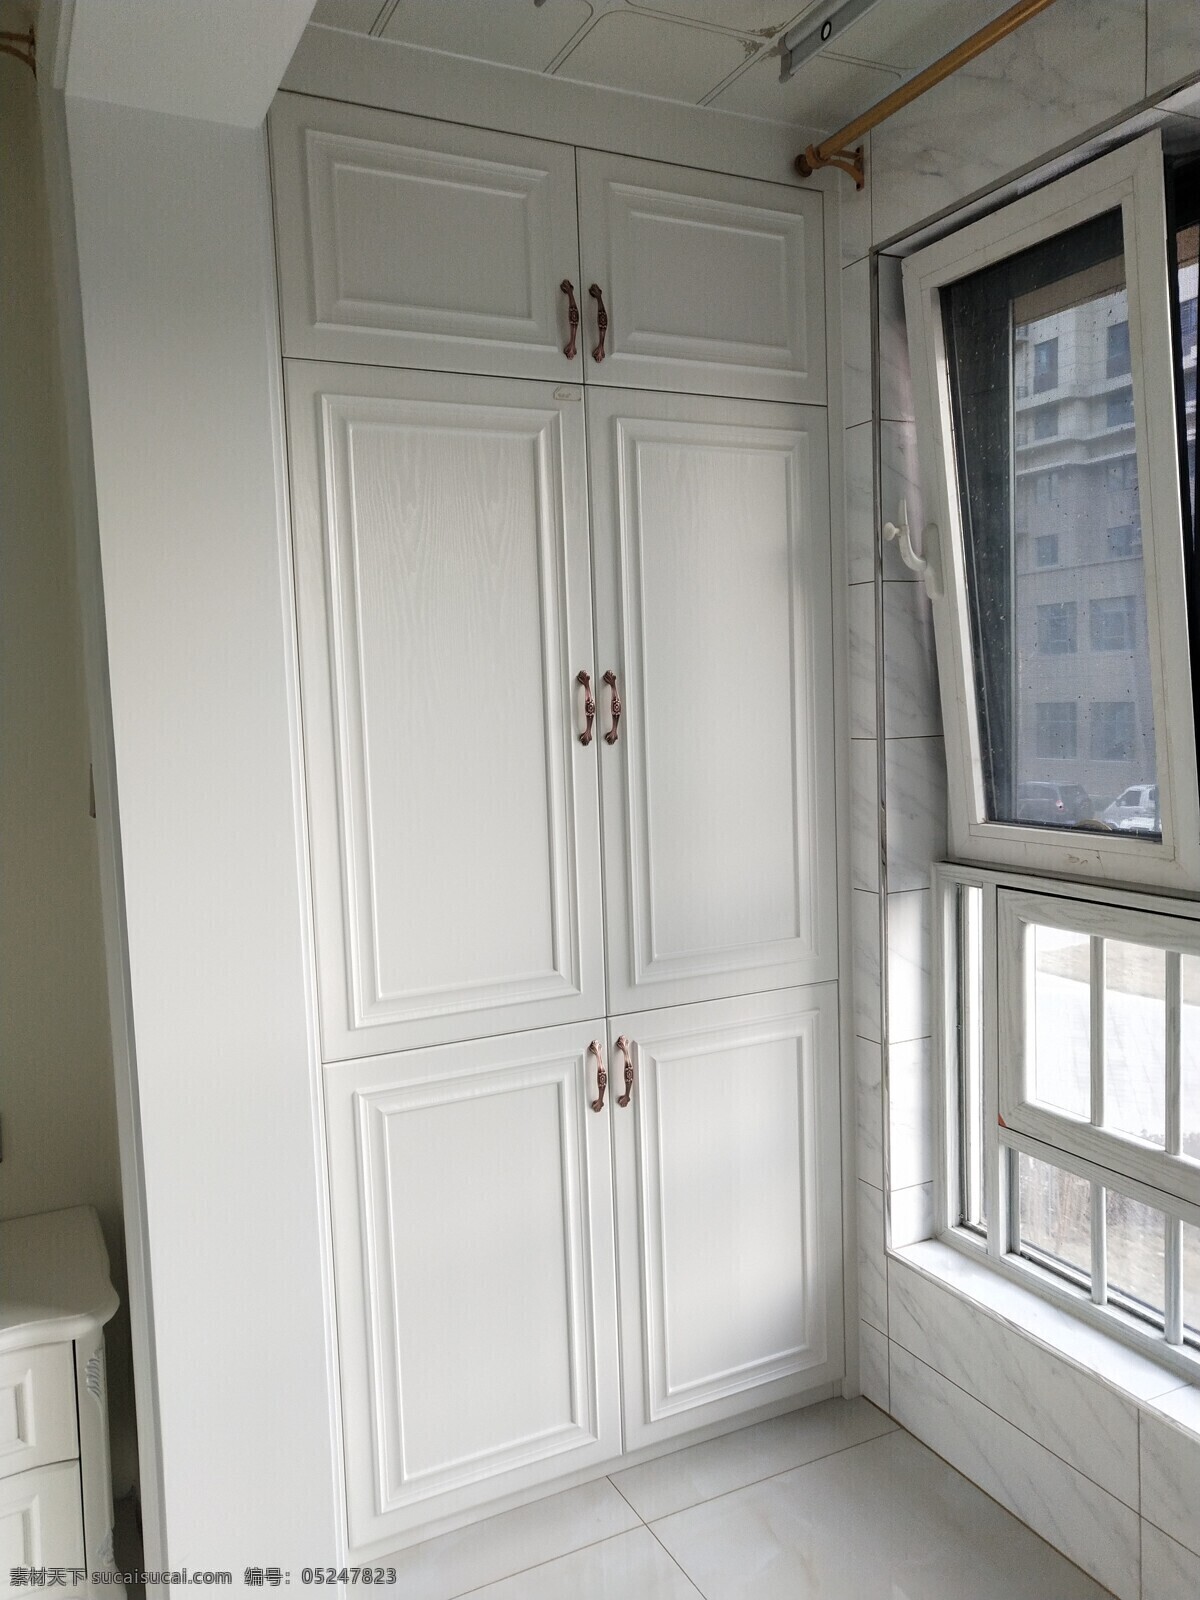 衣柜 阳台柜 储物柜 简欧 欧式 造型 卧室 现代 简约 美式 家具米白色 白色 全屋定制 室内家具 建筑园林 室内摄影